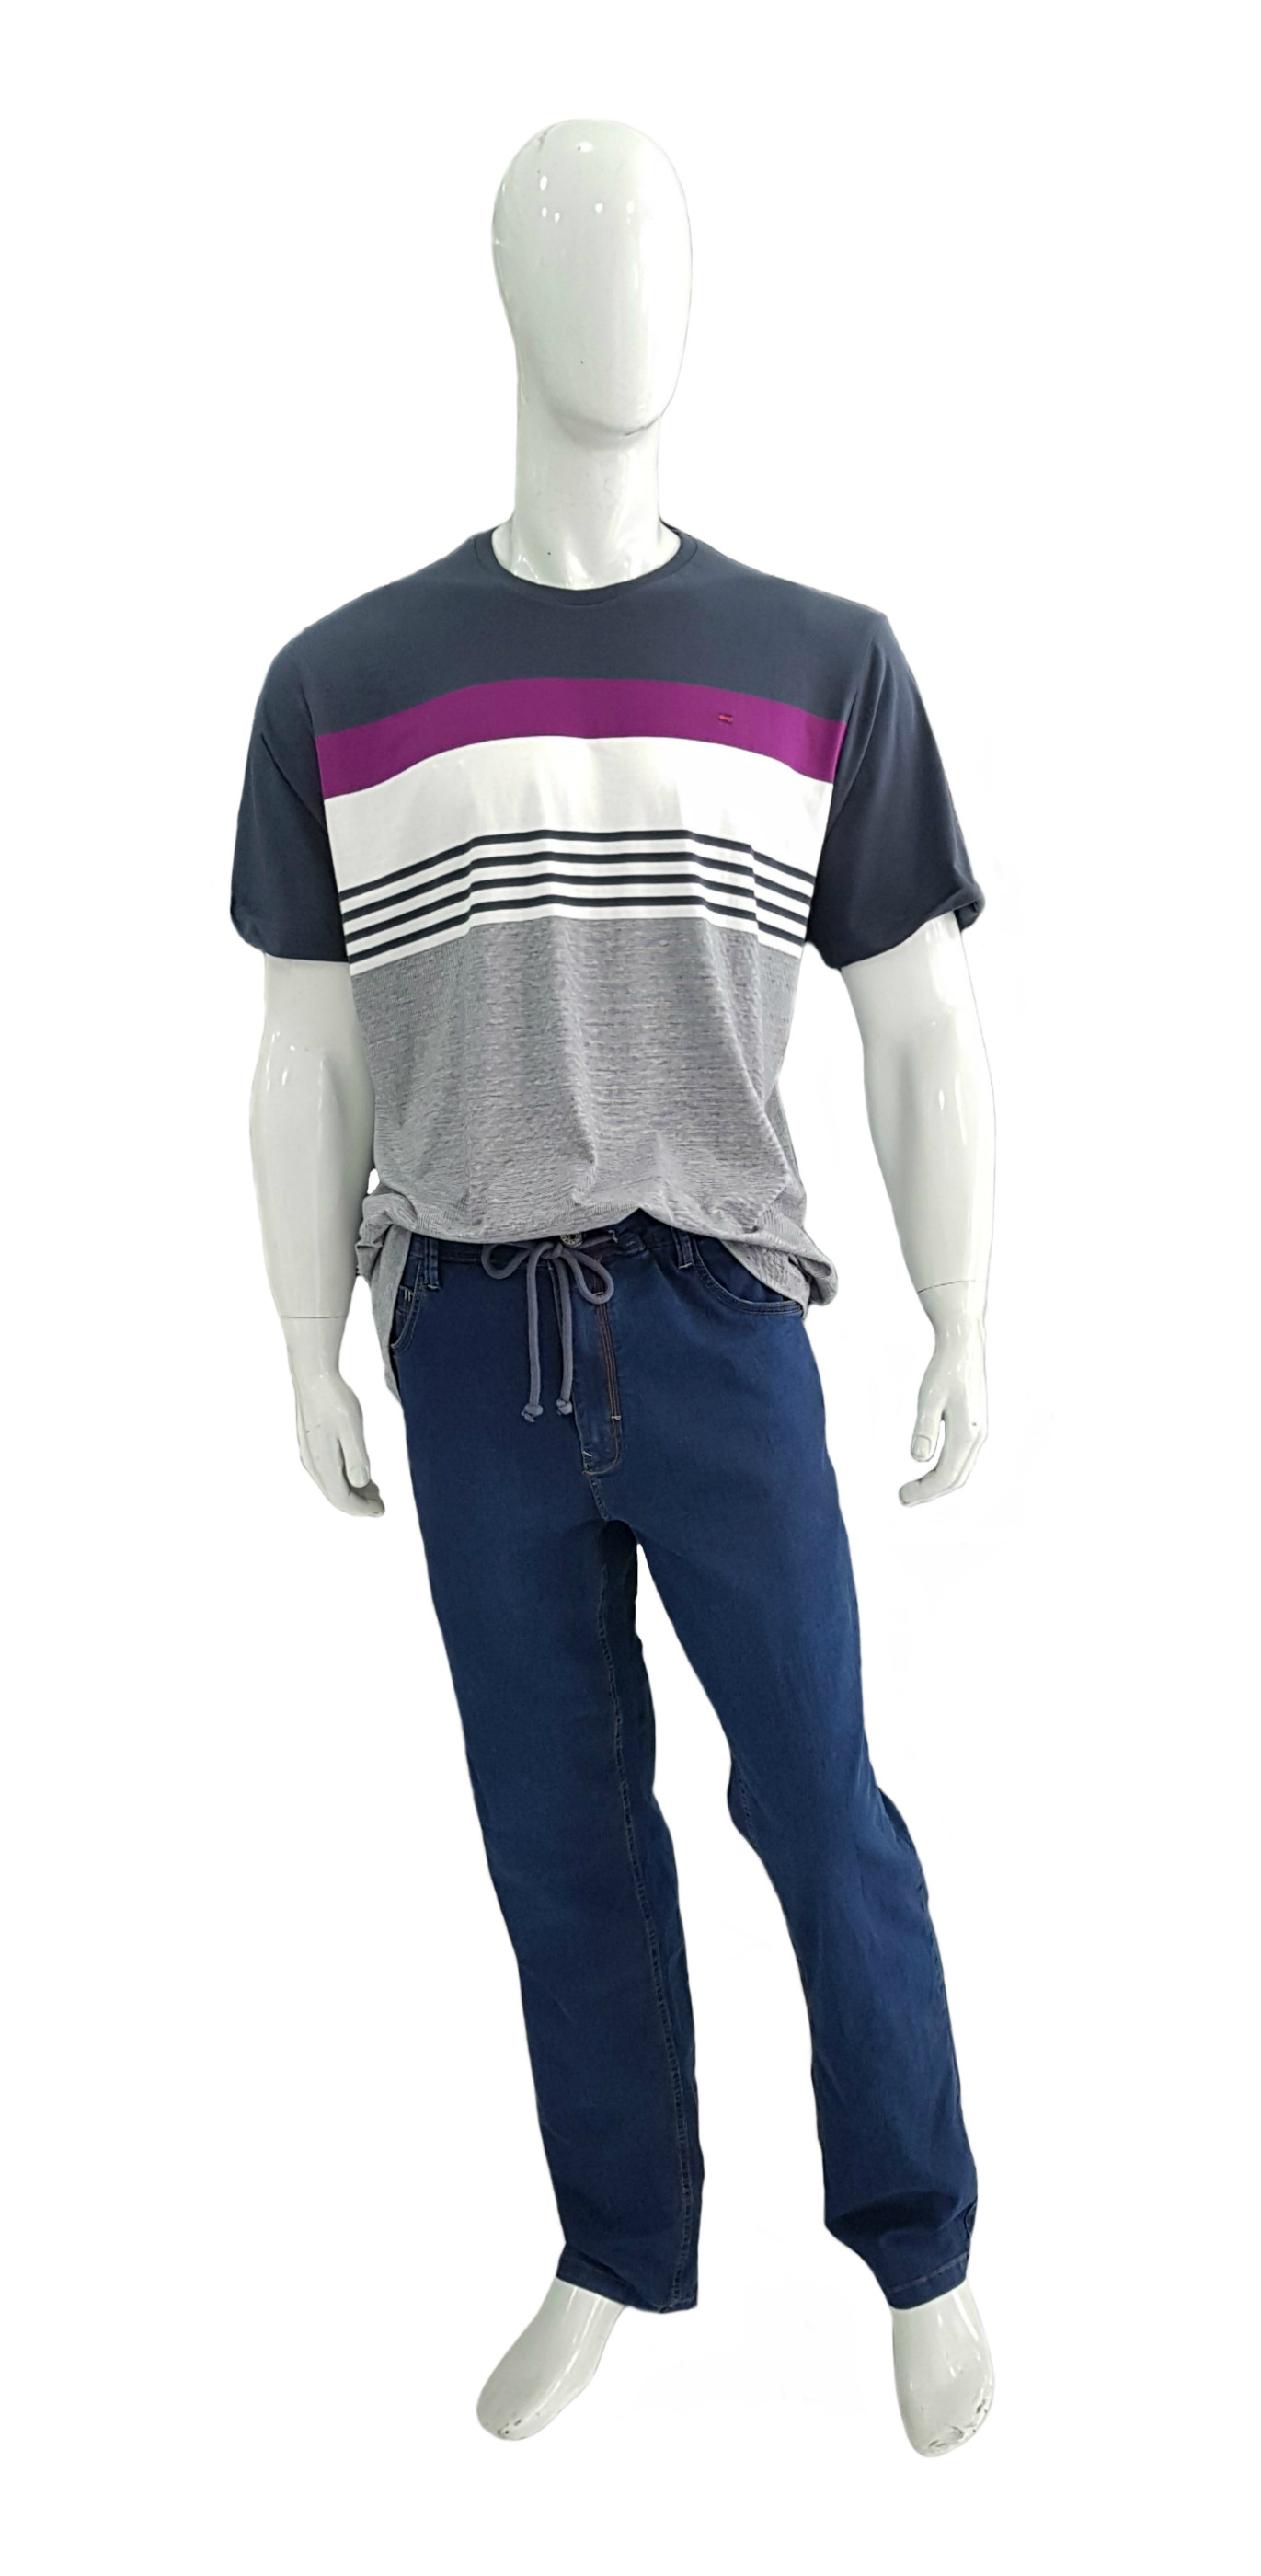 Camiseta Plus Size Nautica Ref 02641 / Calça Plus Size Jeans Ref 03121